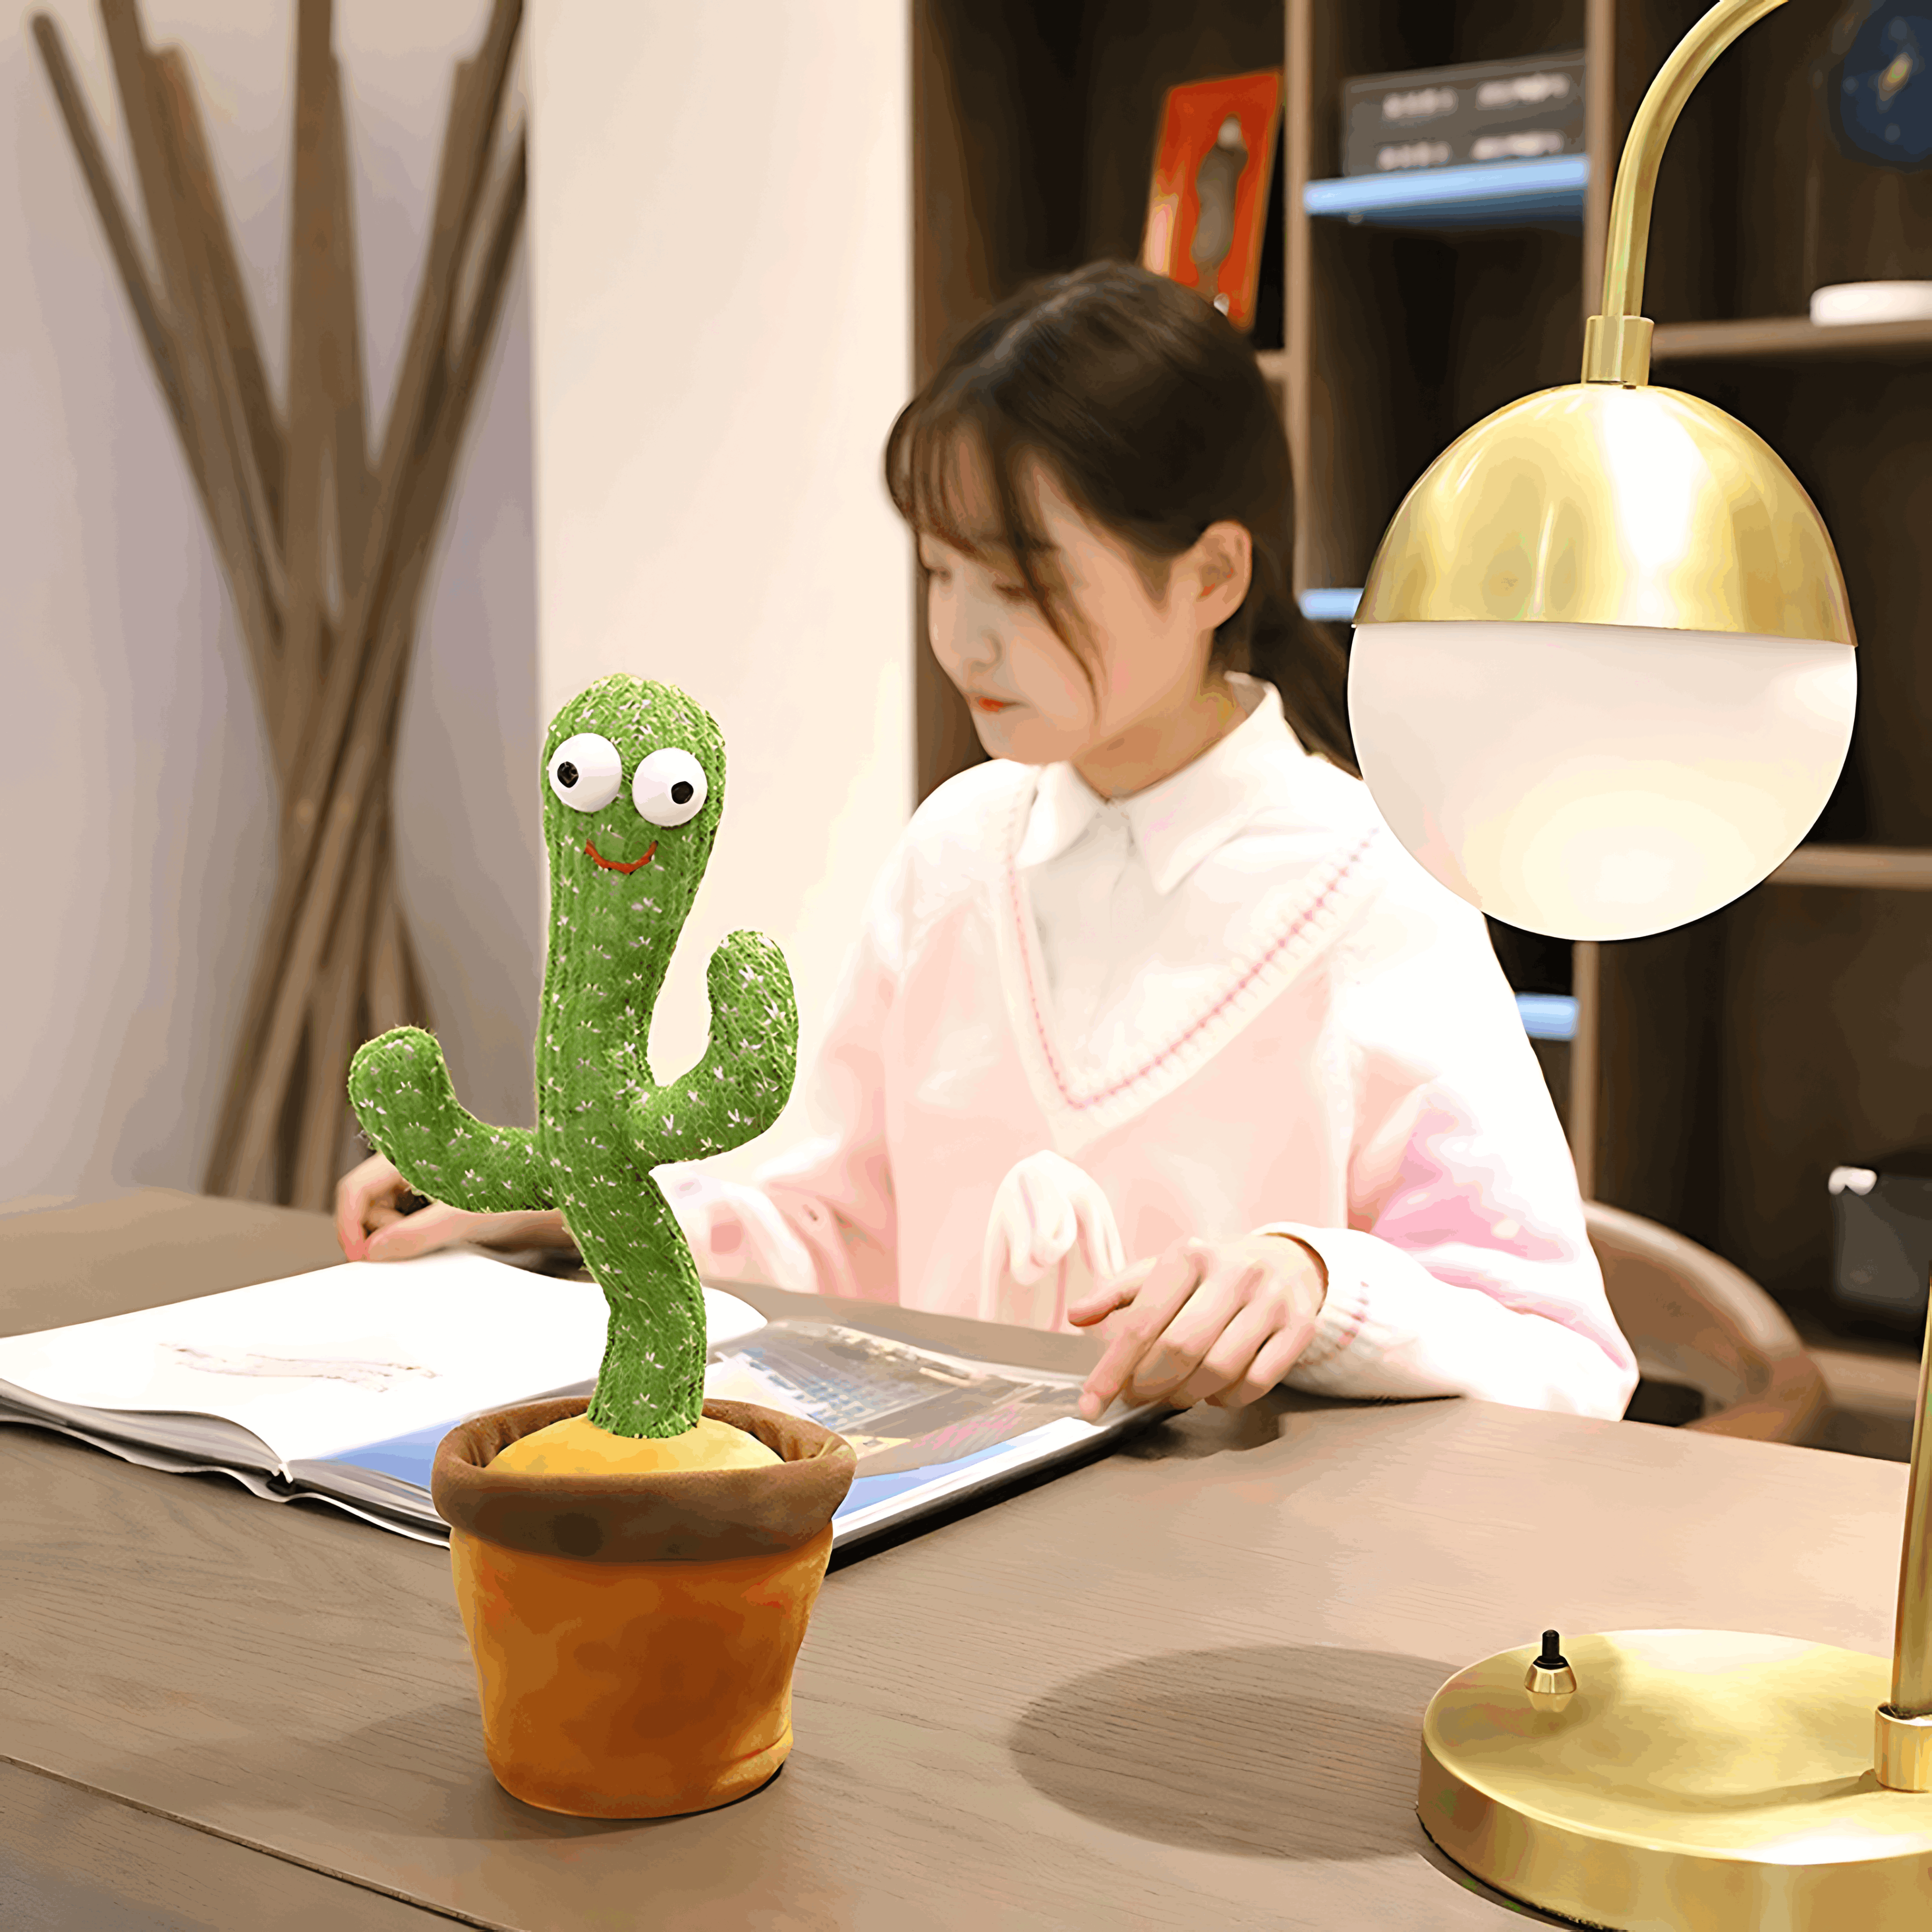 CactiBoogie - Ein interaktiver und lehrreicher Spielkamerad, bereit, dein Kind jeden Tag aufzuheitern!